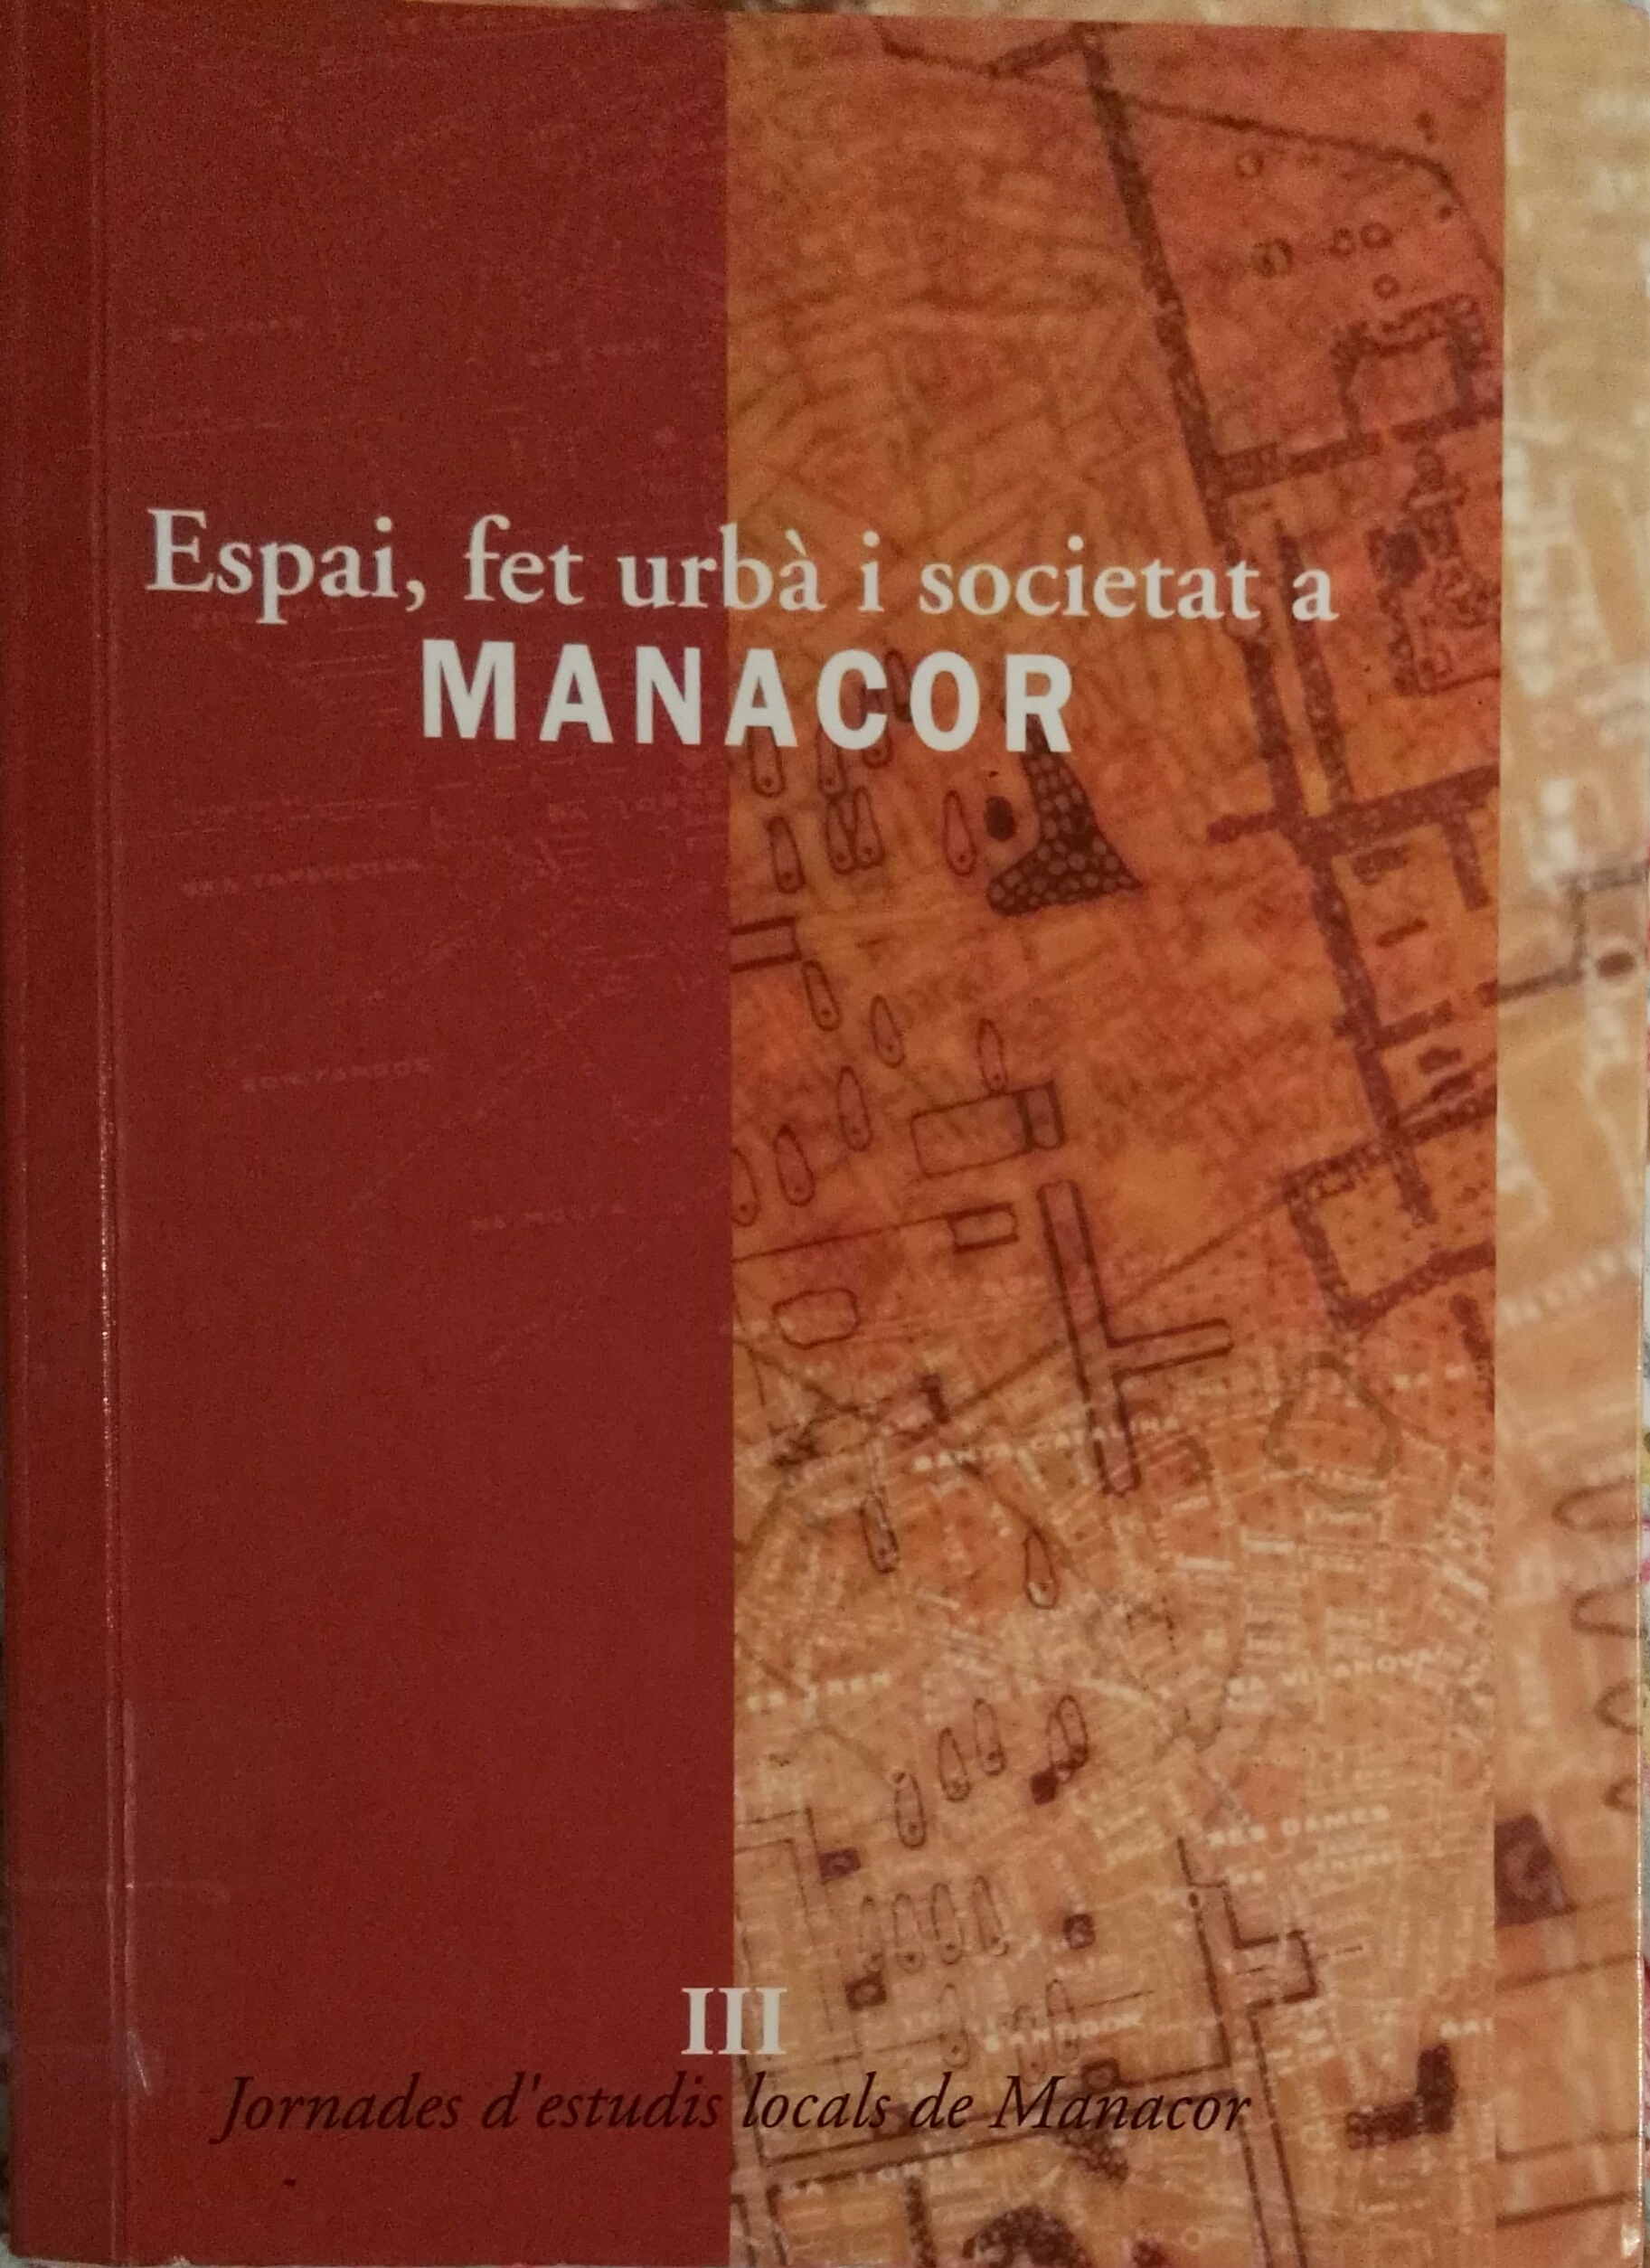 Imagen de portada del libro Manacor